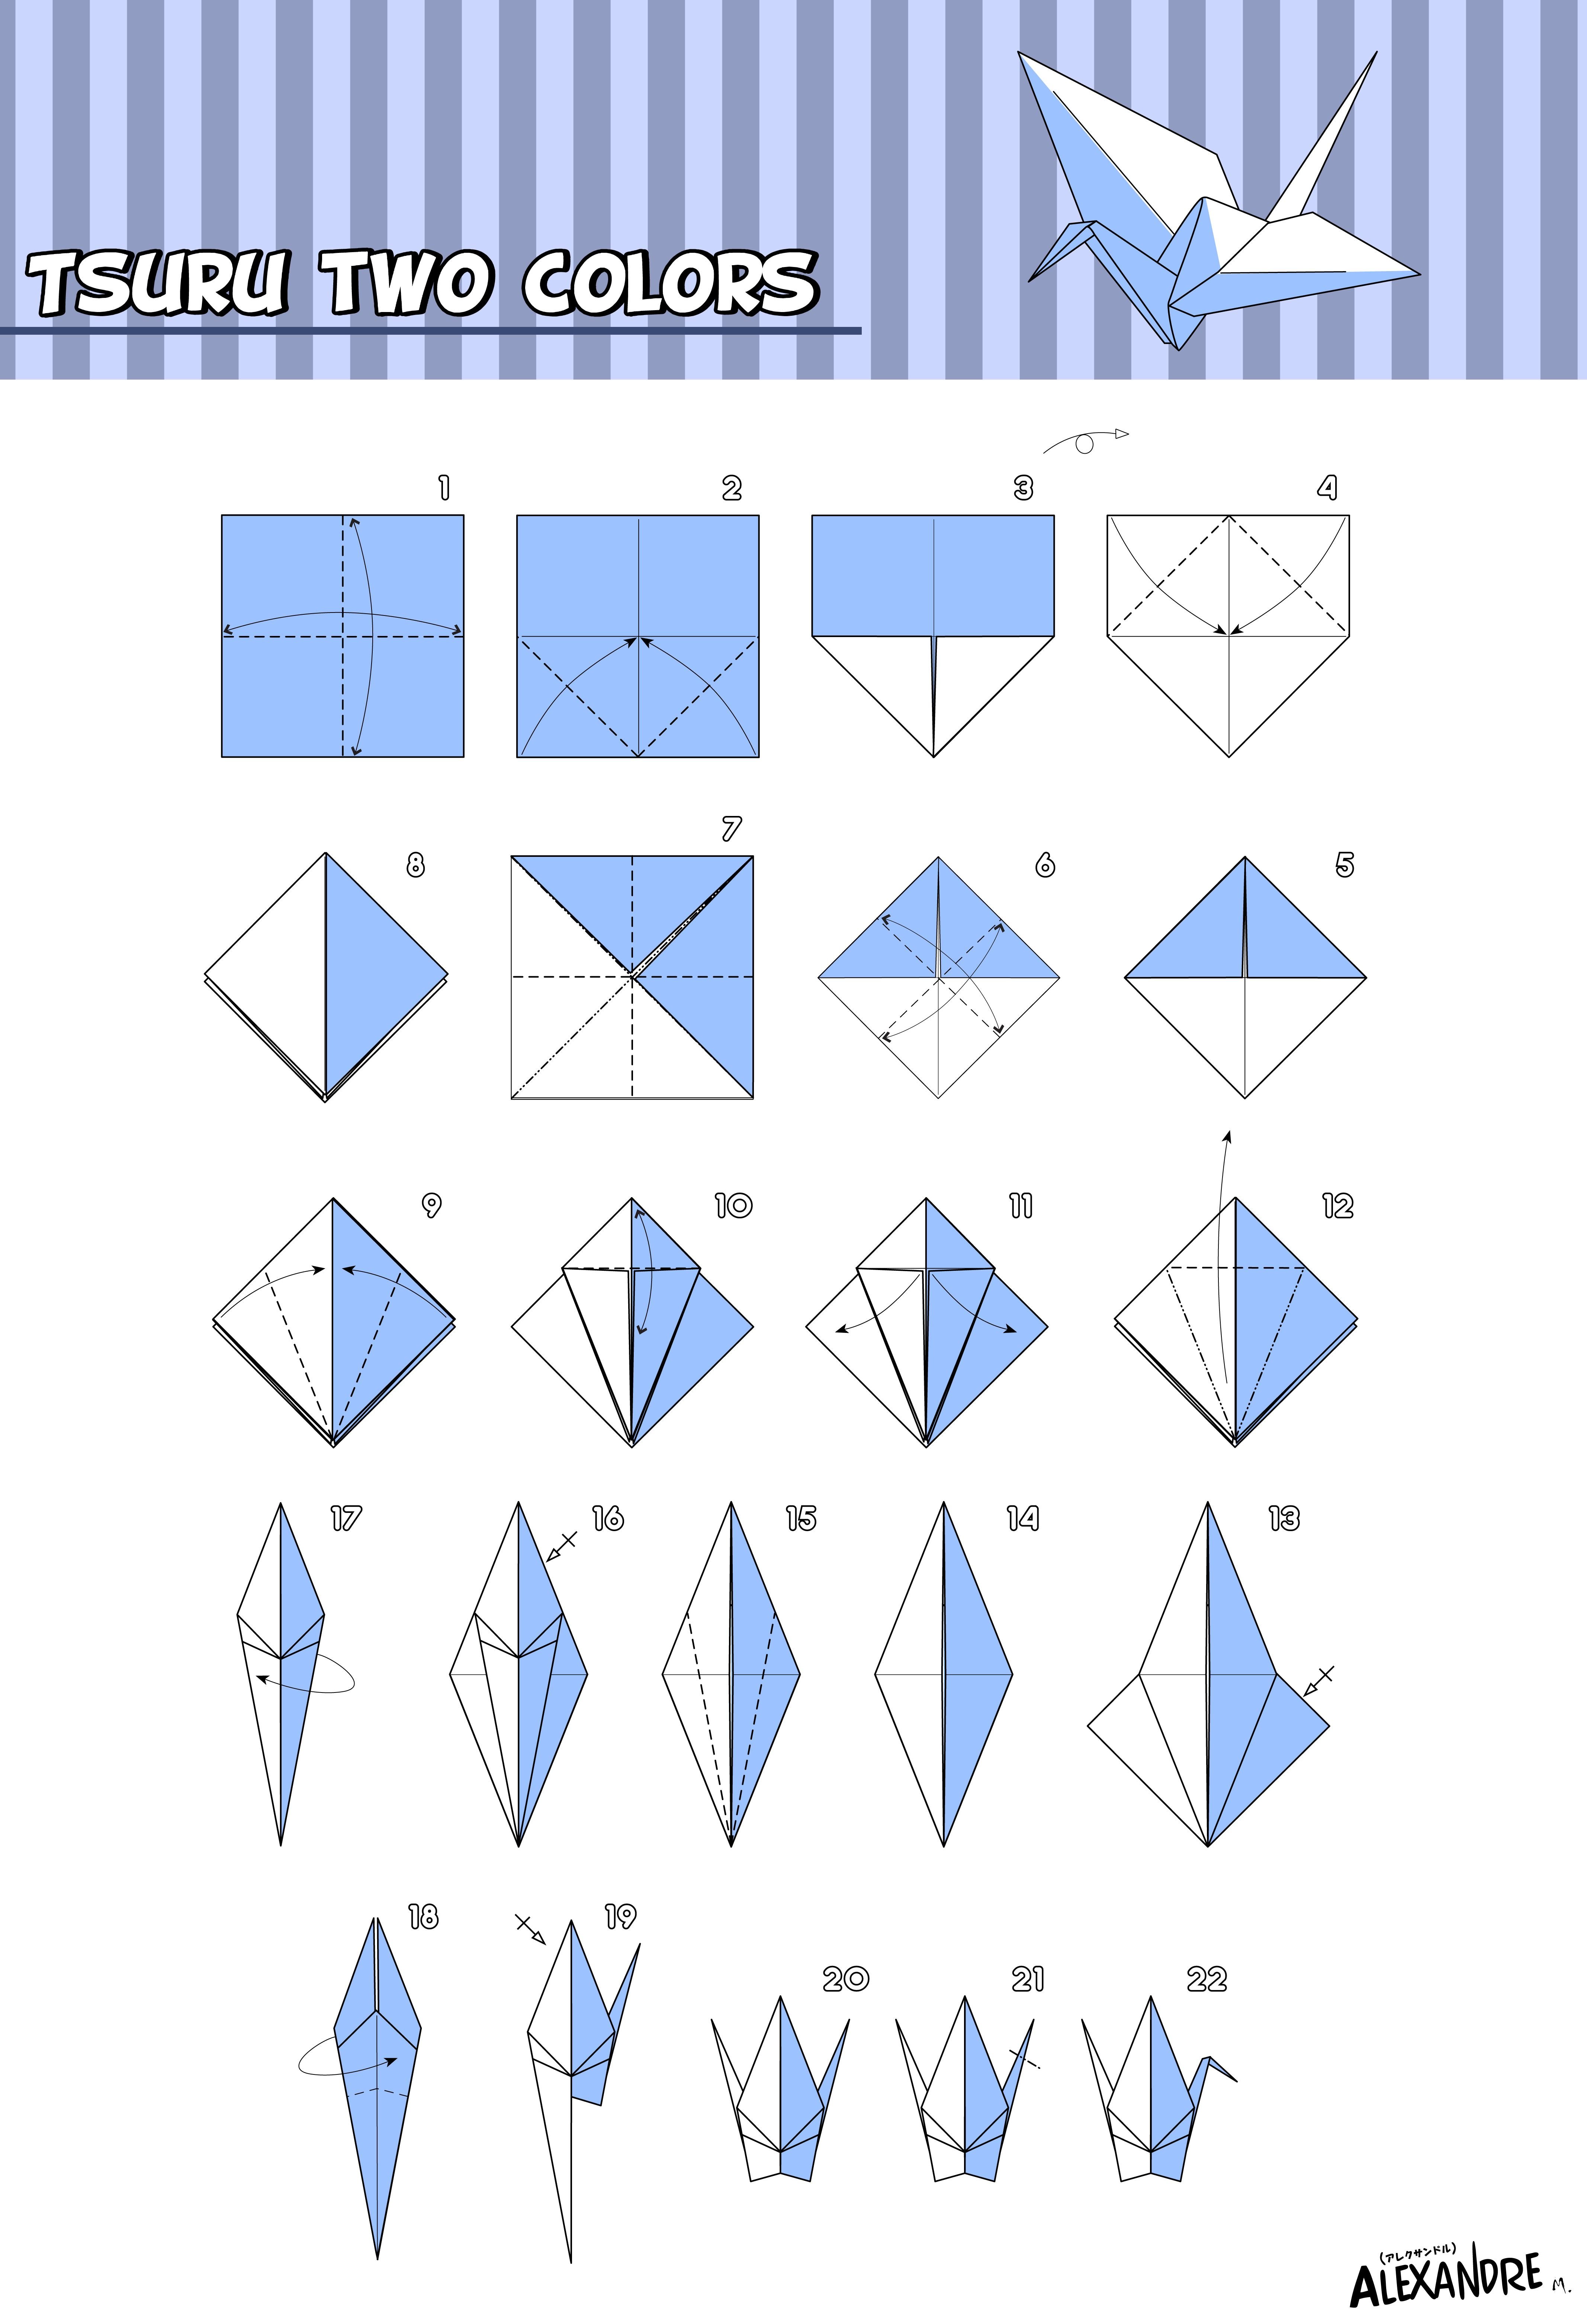 Оригами журавлик а4. Как сложить журавля из бумаги пошагово. Оригами из бумаги для начинающих Журавлик. Схема как сложить журавлика из бумаги. Журавлик Цуру оригами схема.